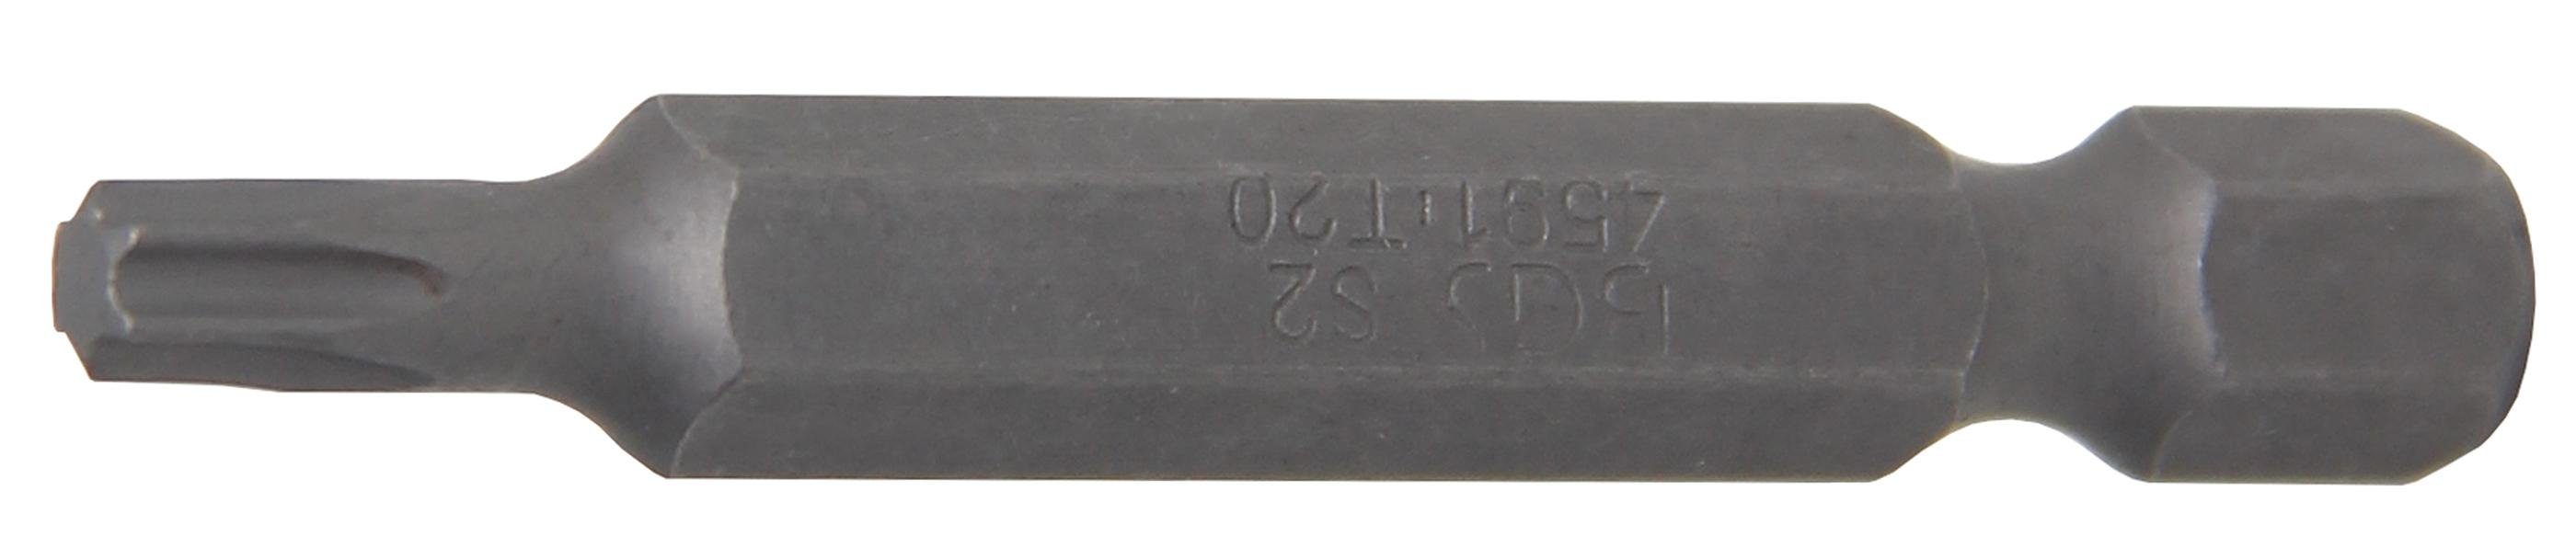 BGS technic 6,3 Außensechskant Länge mm Bit-Schraubendreher Torx) (1/4), T-Profil 50 Bit, Antrieb mm, T20 (für